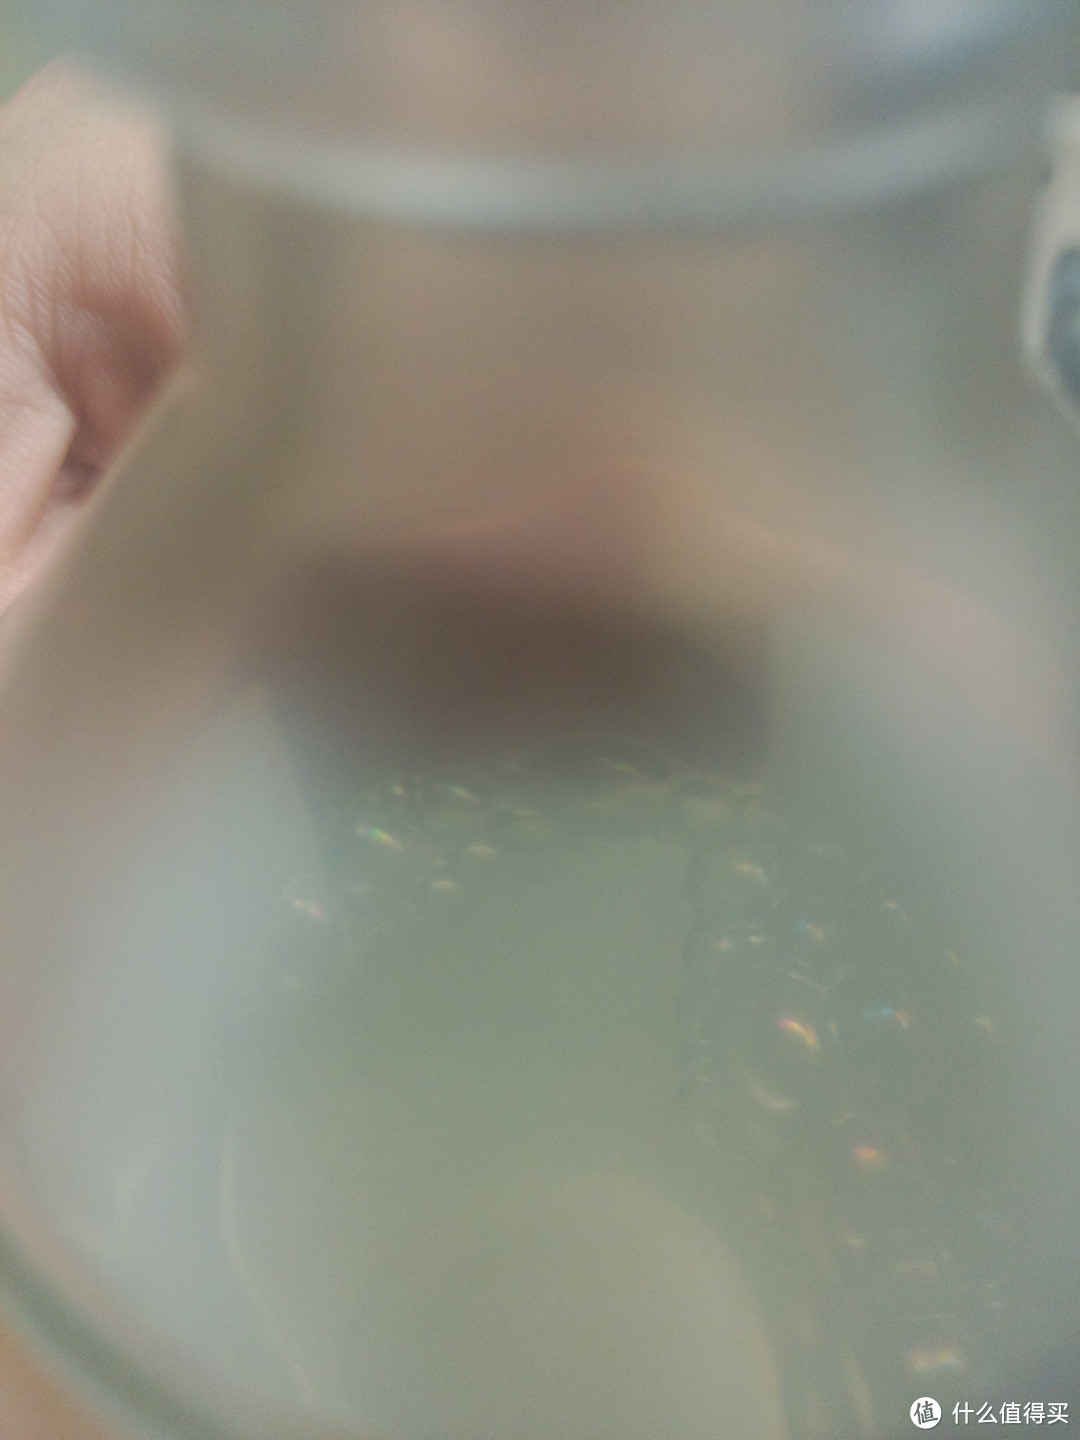 这精华水里面的泡泡，咋看起来像洗洁精似得？